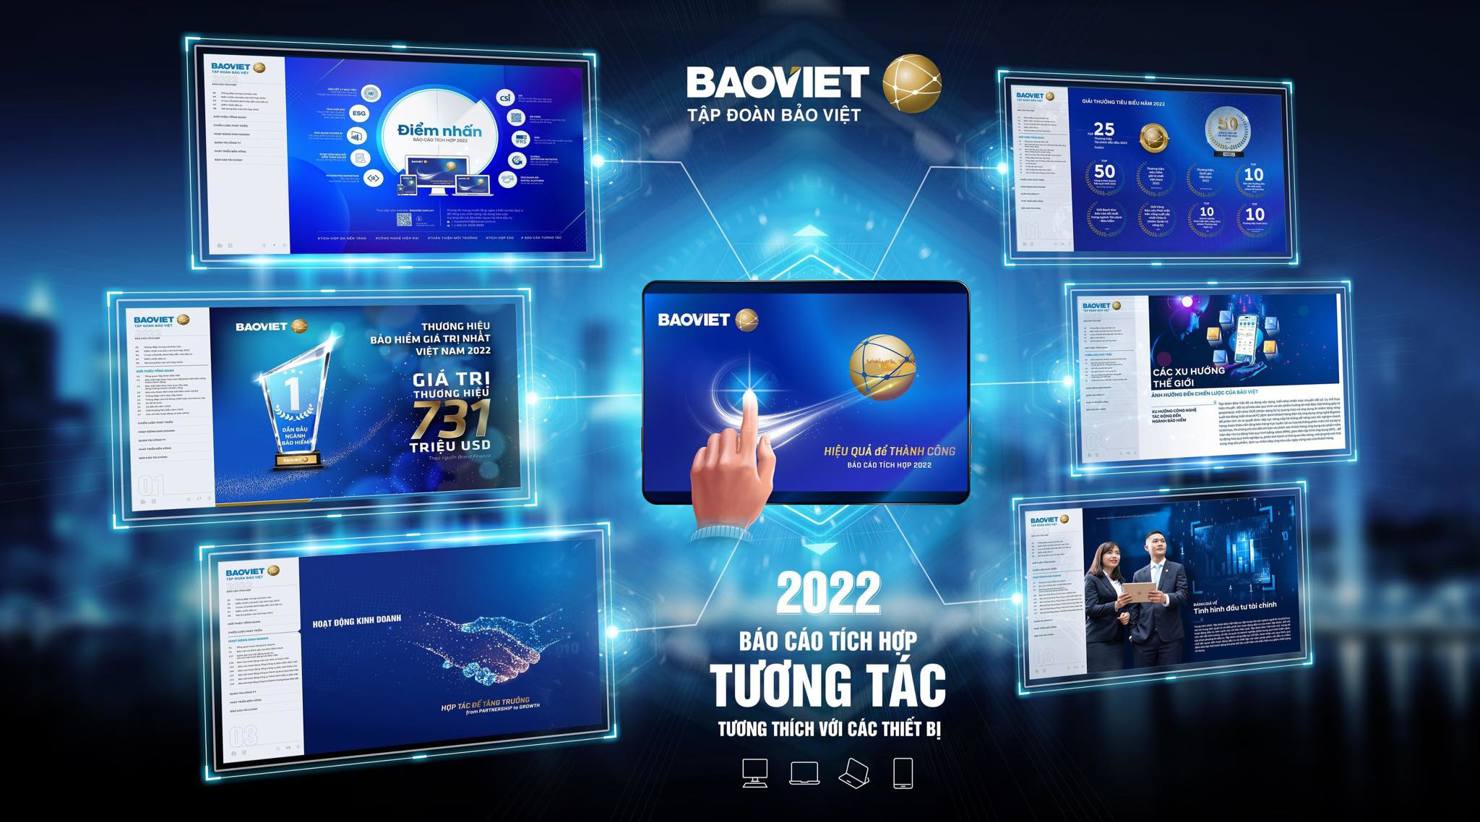 Bảo Việt là doanh nghiệp đầu tiên của Việt Nam ứng dụng giải pháp công nghệ tương tác trong việc triển khai báo cáo tích hợp.